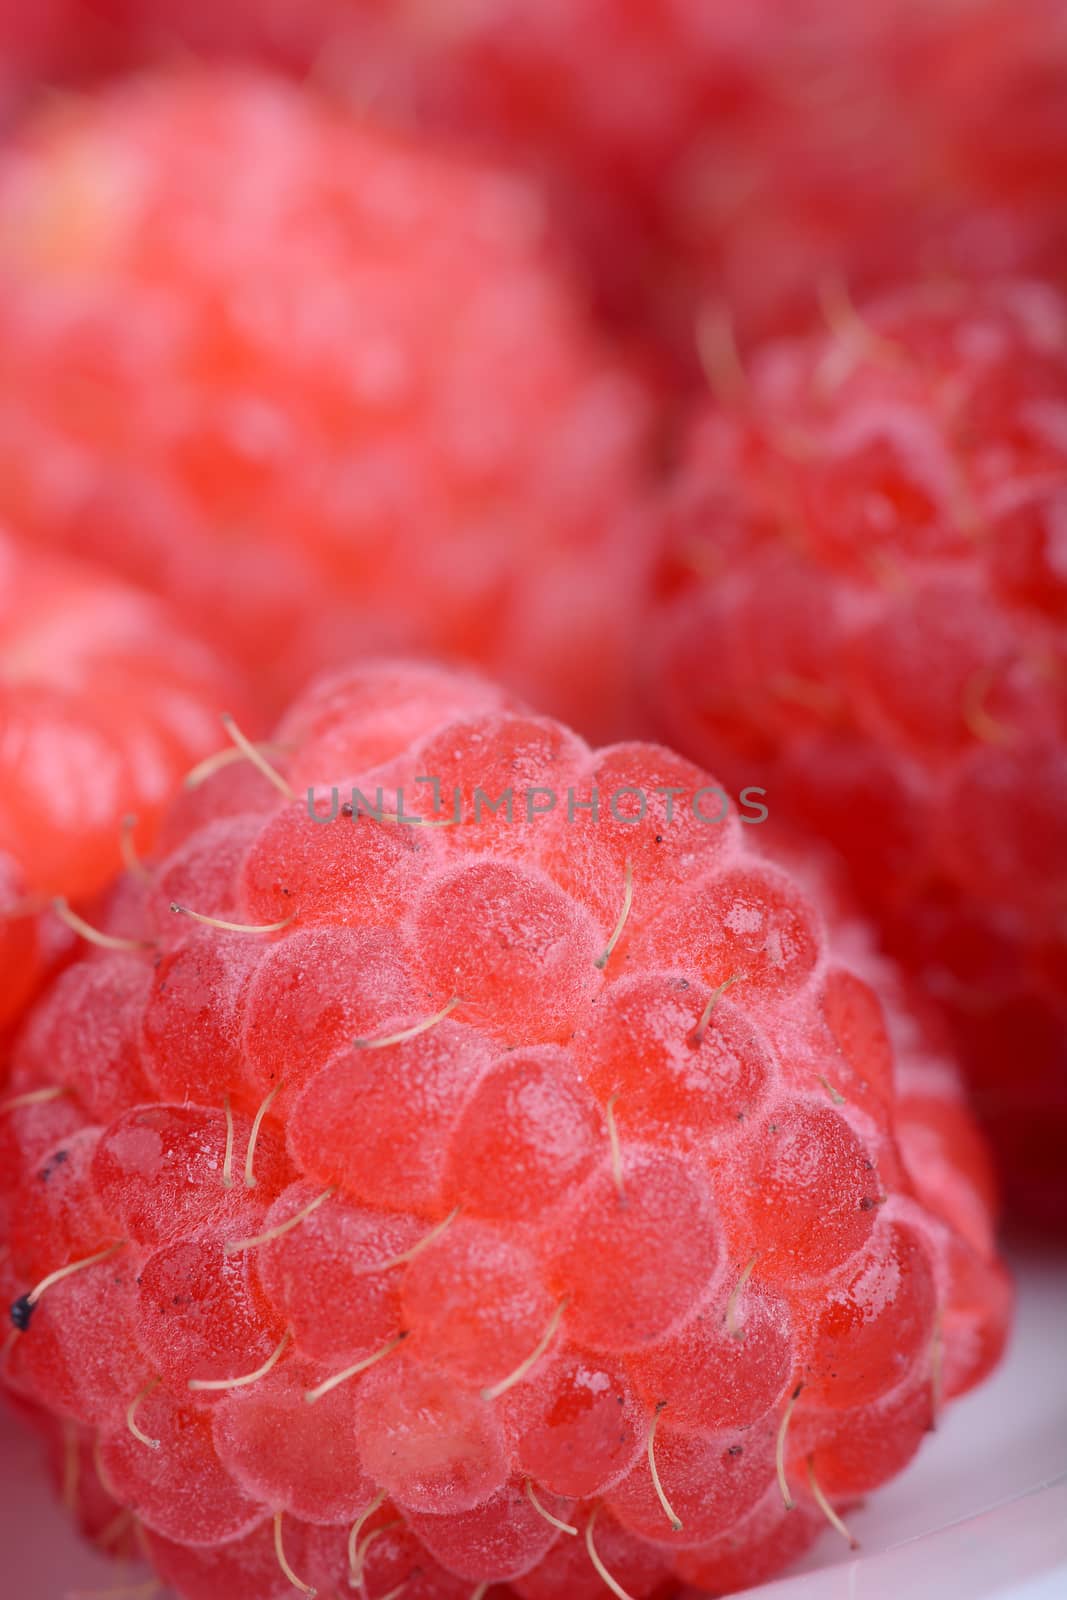 Fresh sweet raspberries close up.